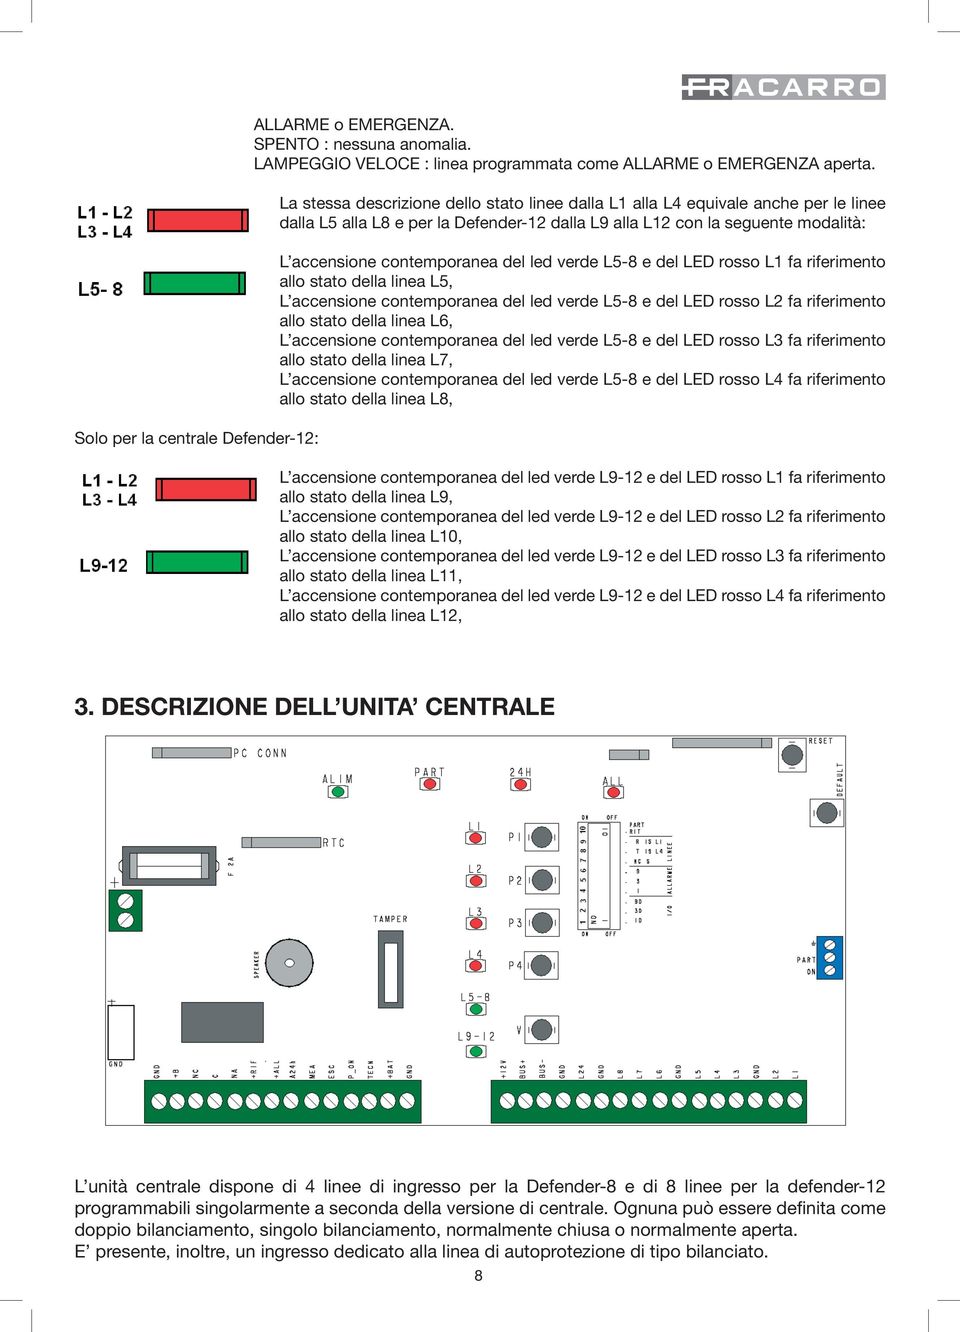 led verde L5-8 e del LED rosso L1 fa riferimento allo stato della linea L5, L accensione contemporanea del led verde L5-8 e del LED rosso L2 fa riferimento allo stato della linea L6, L accensione